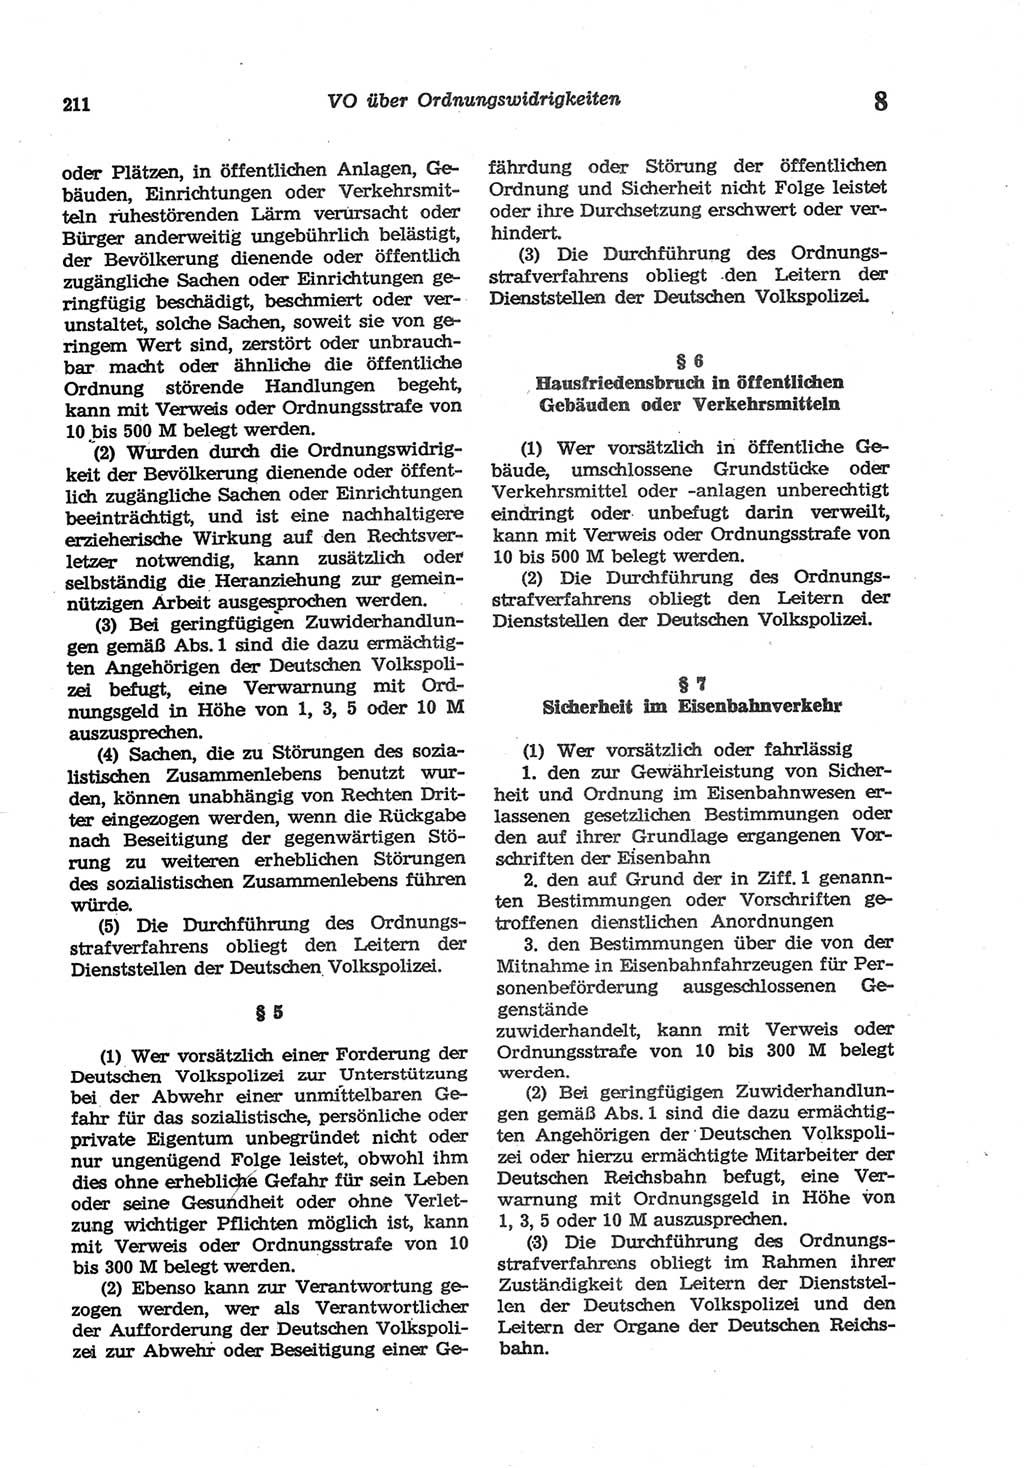 Strafgesetzbuch (StGB) der Deutschen Demokratischen Republik (DDR) und angrenzende Gesetze und Bestimmungen 1977, Seite 211 (StGB DDR Ges. Best. 1977, S. 211)